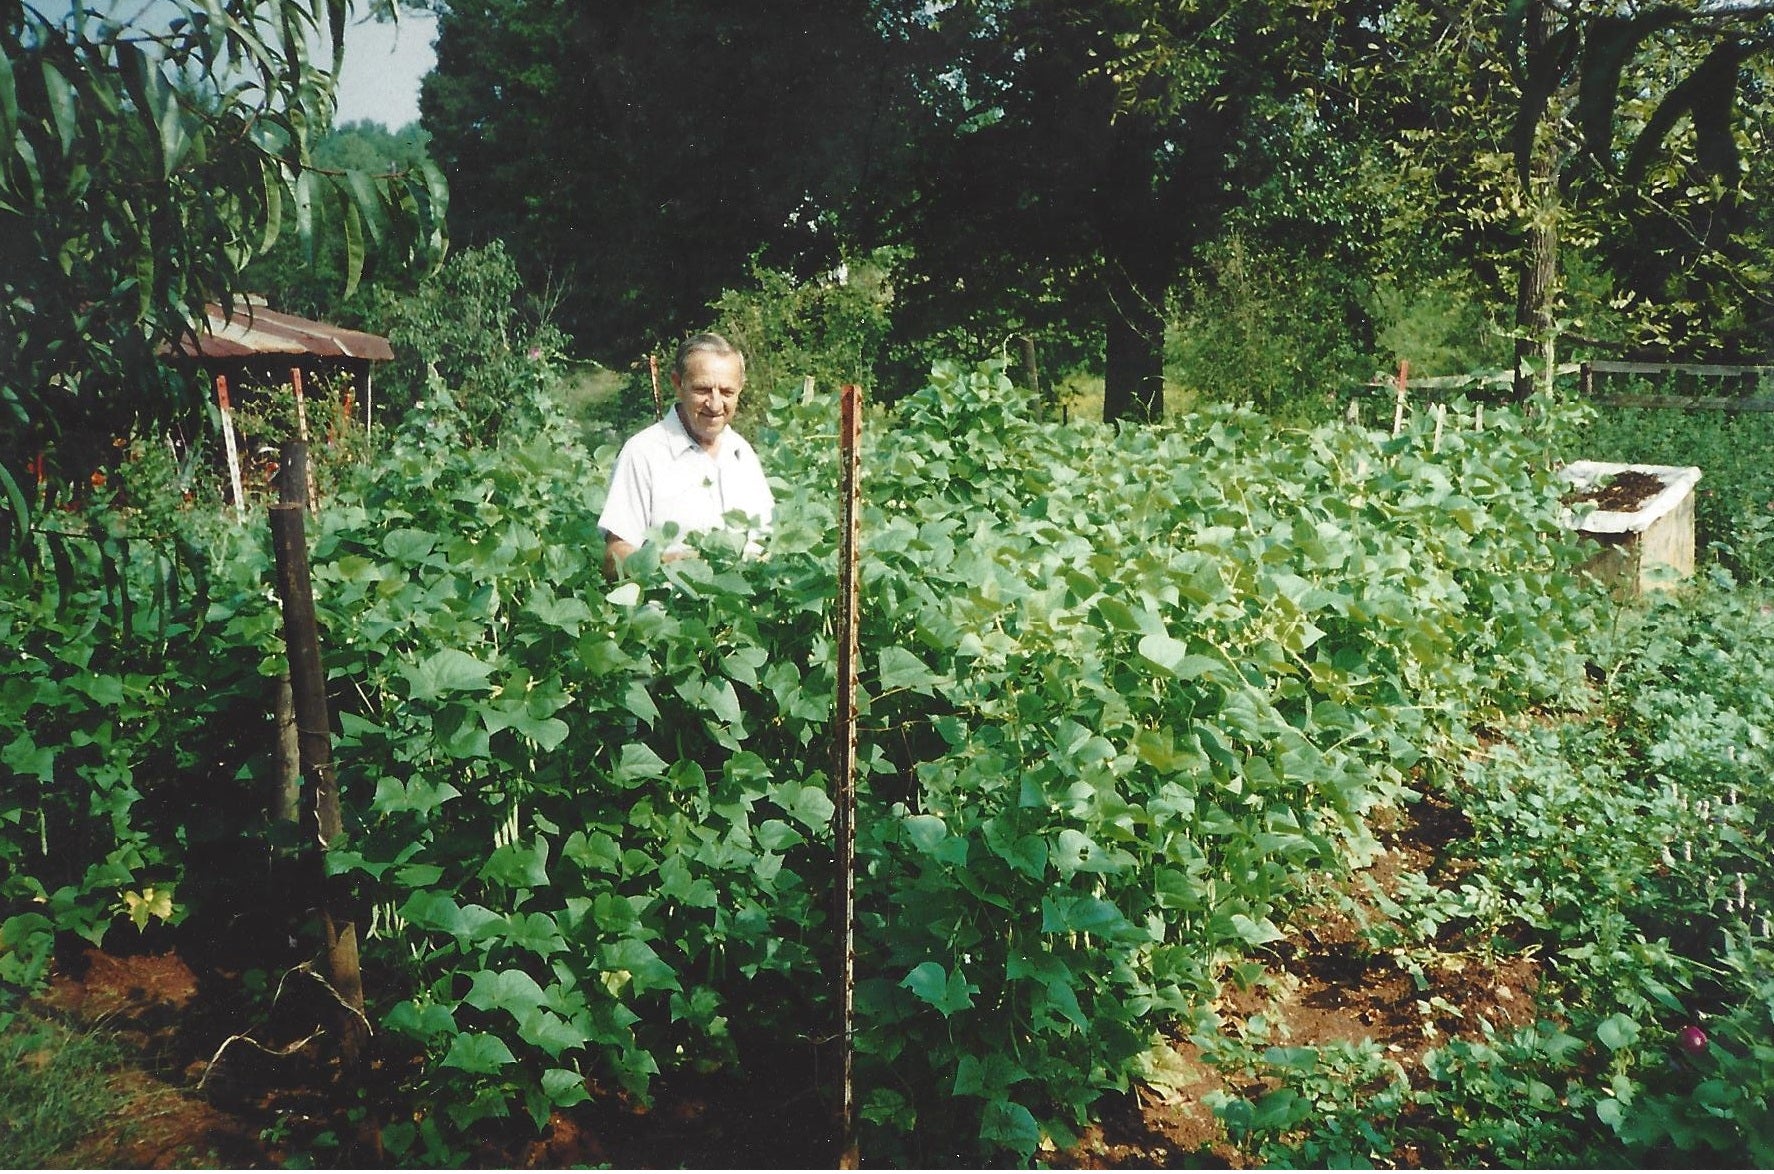 The Story of Gro-Rite Garden - 1st Generation Farmer